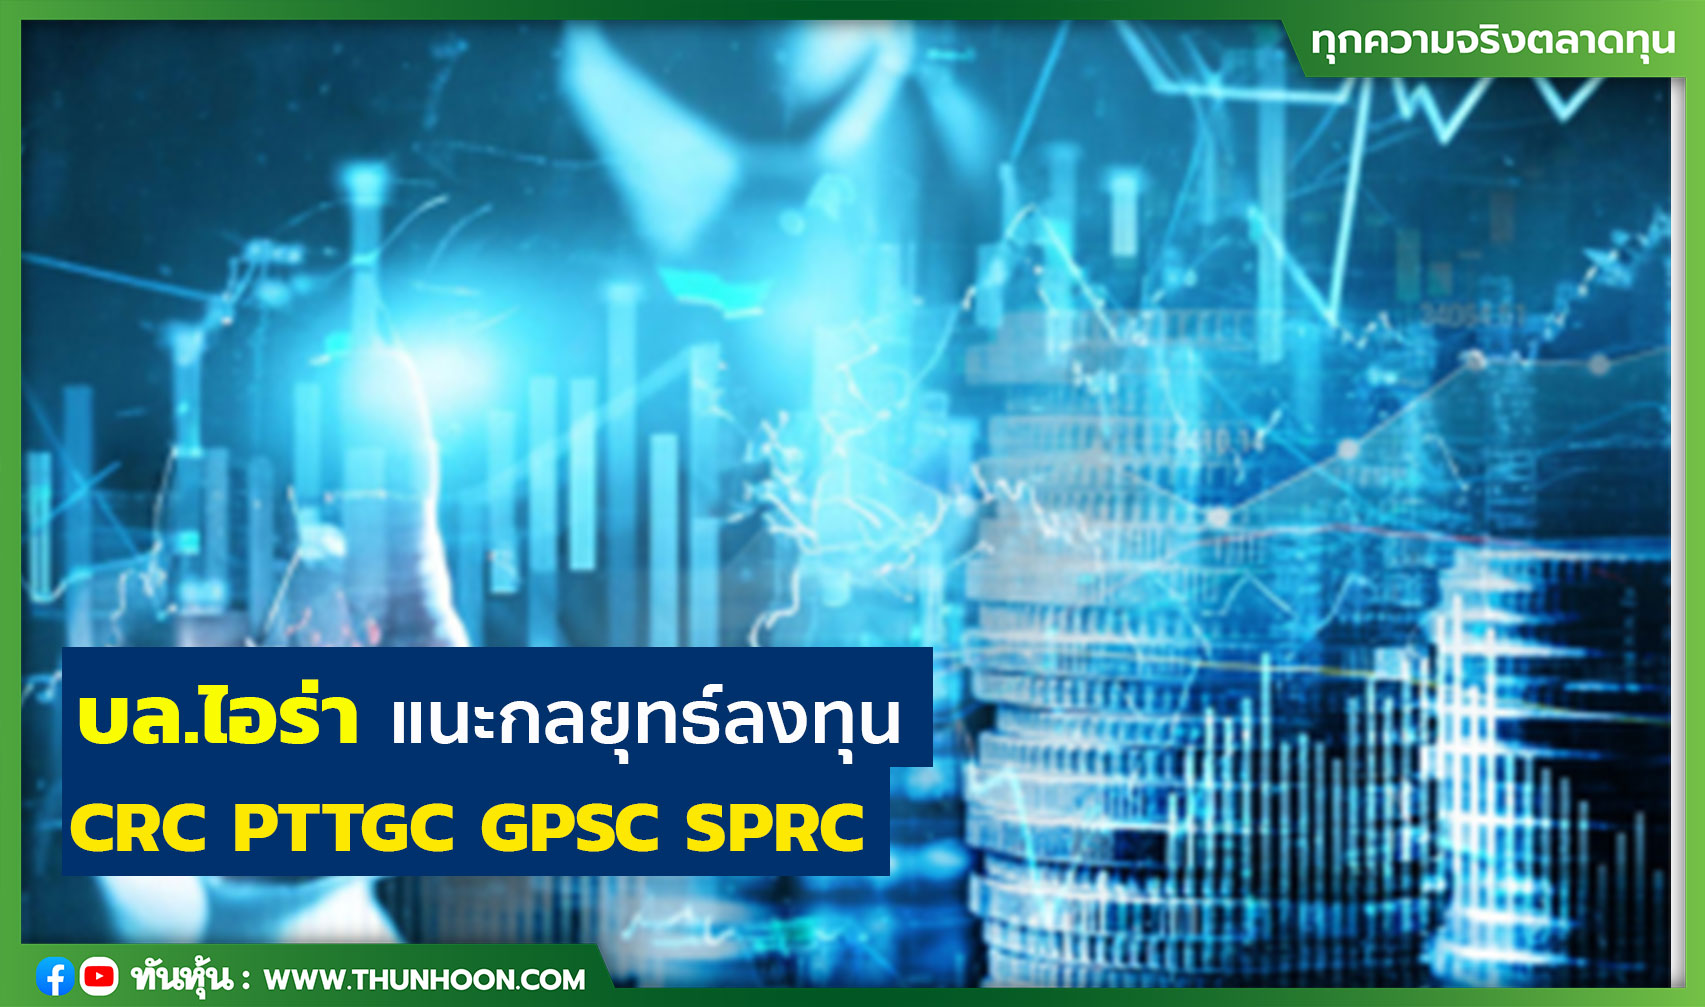 บล.ไอร่า แนะกลยุทธ์ลงทุน CRC PTTGC GPSC SPRC 